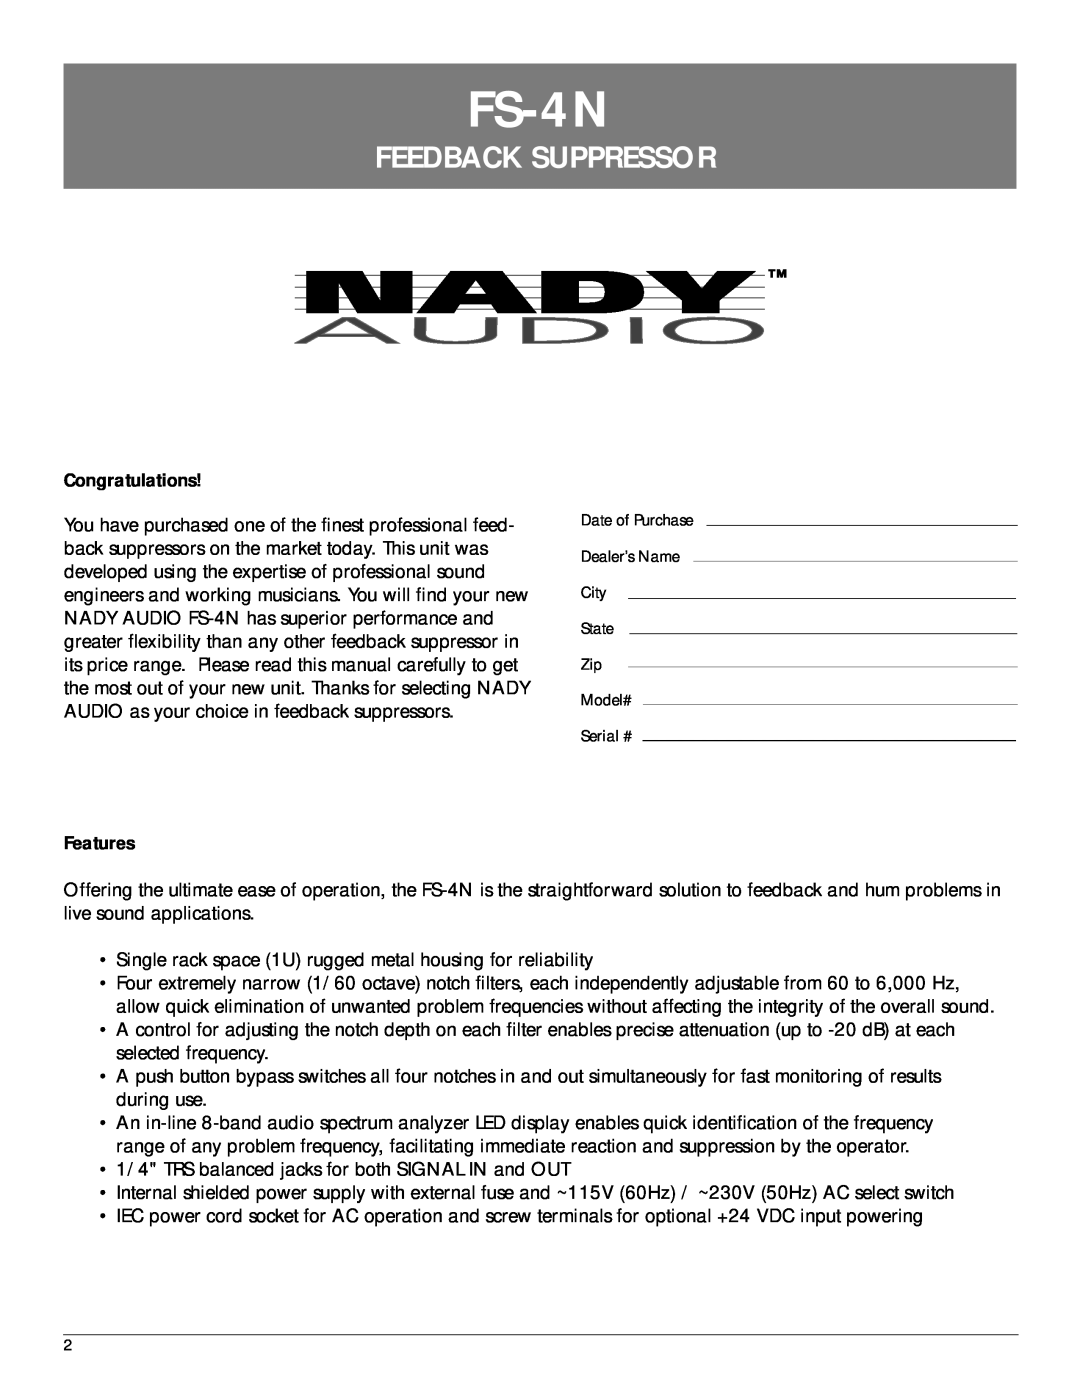 Nady Systems FS4N manual FS-4N, Feedback Suppressor 